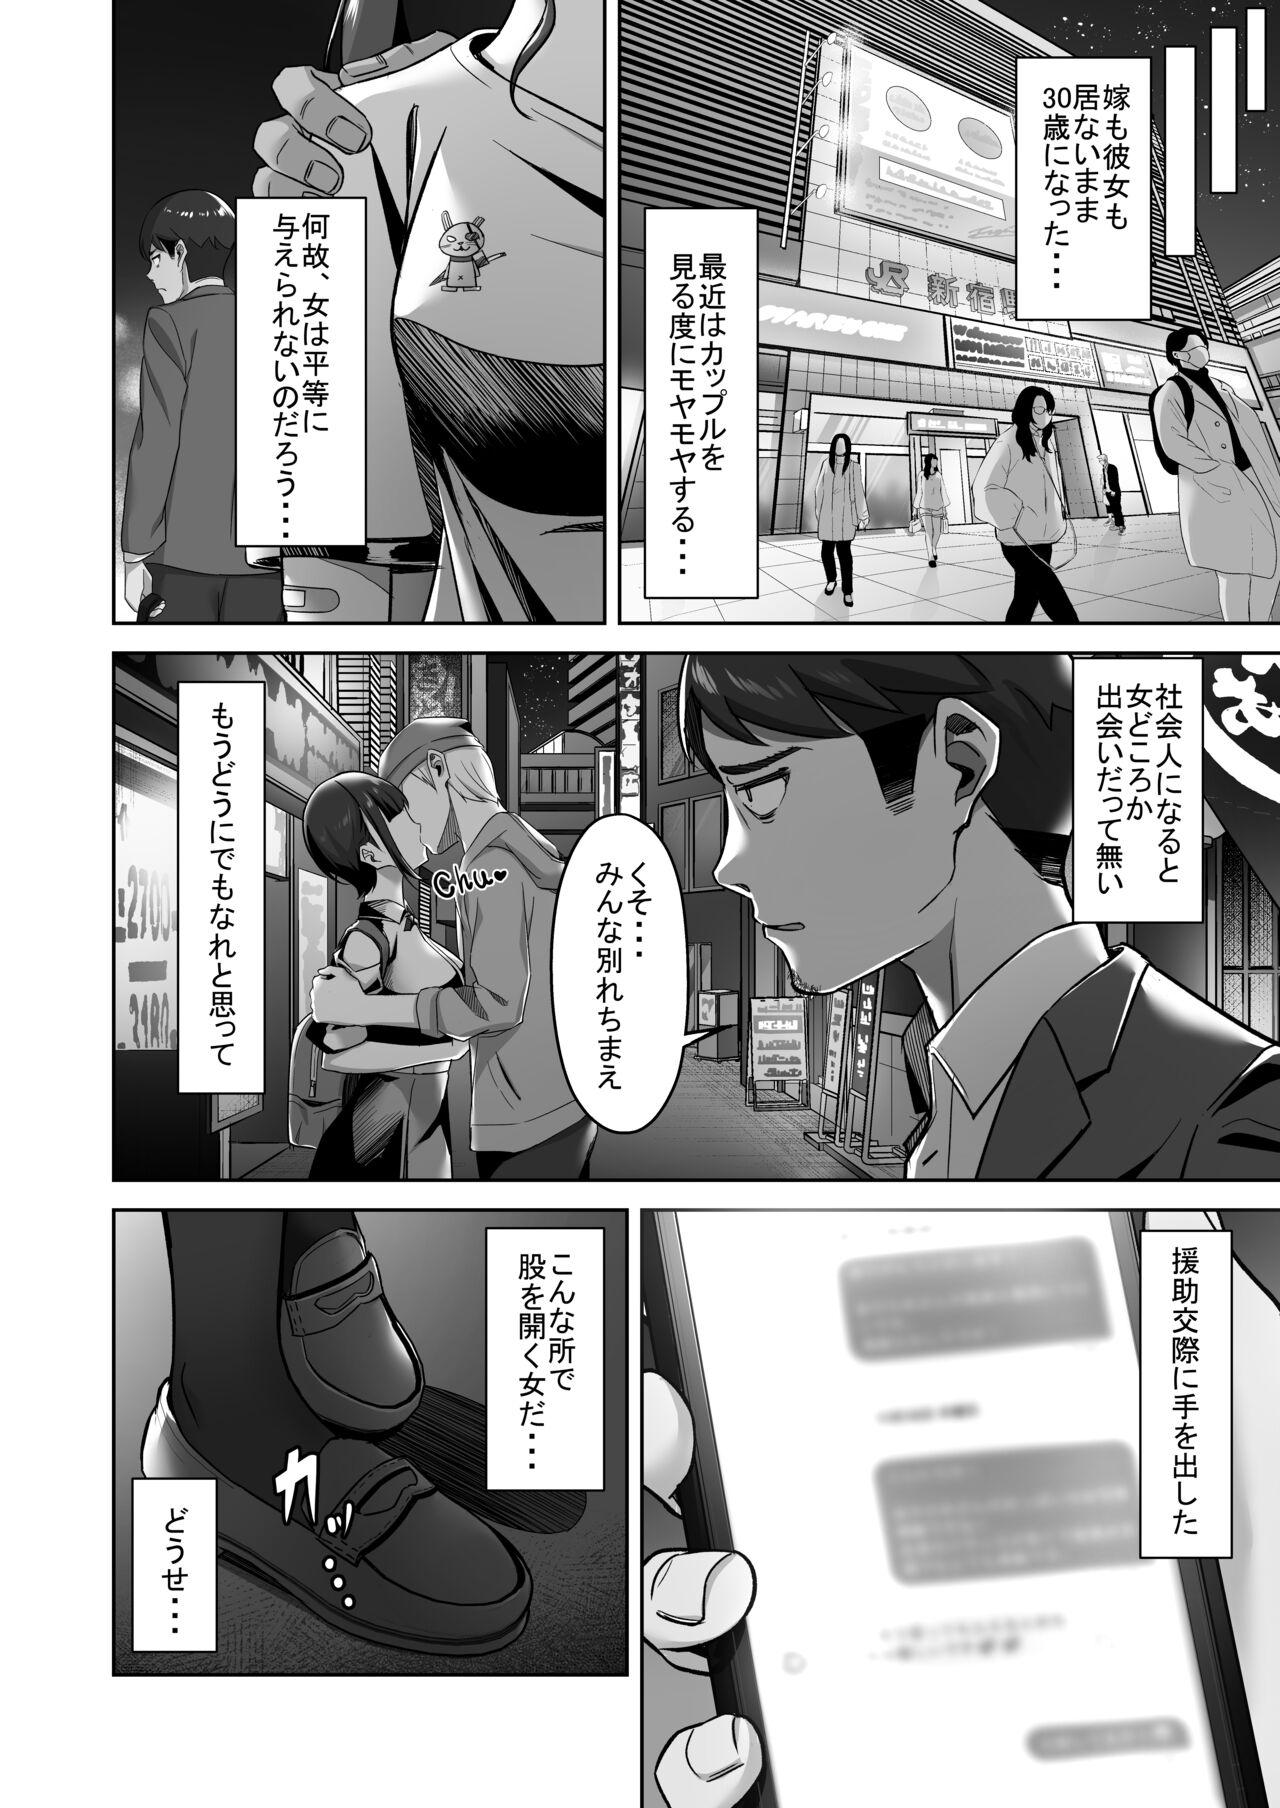 Peeing Enkkou-chan no Papakatsu Nikki ① Vadia - Page 3